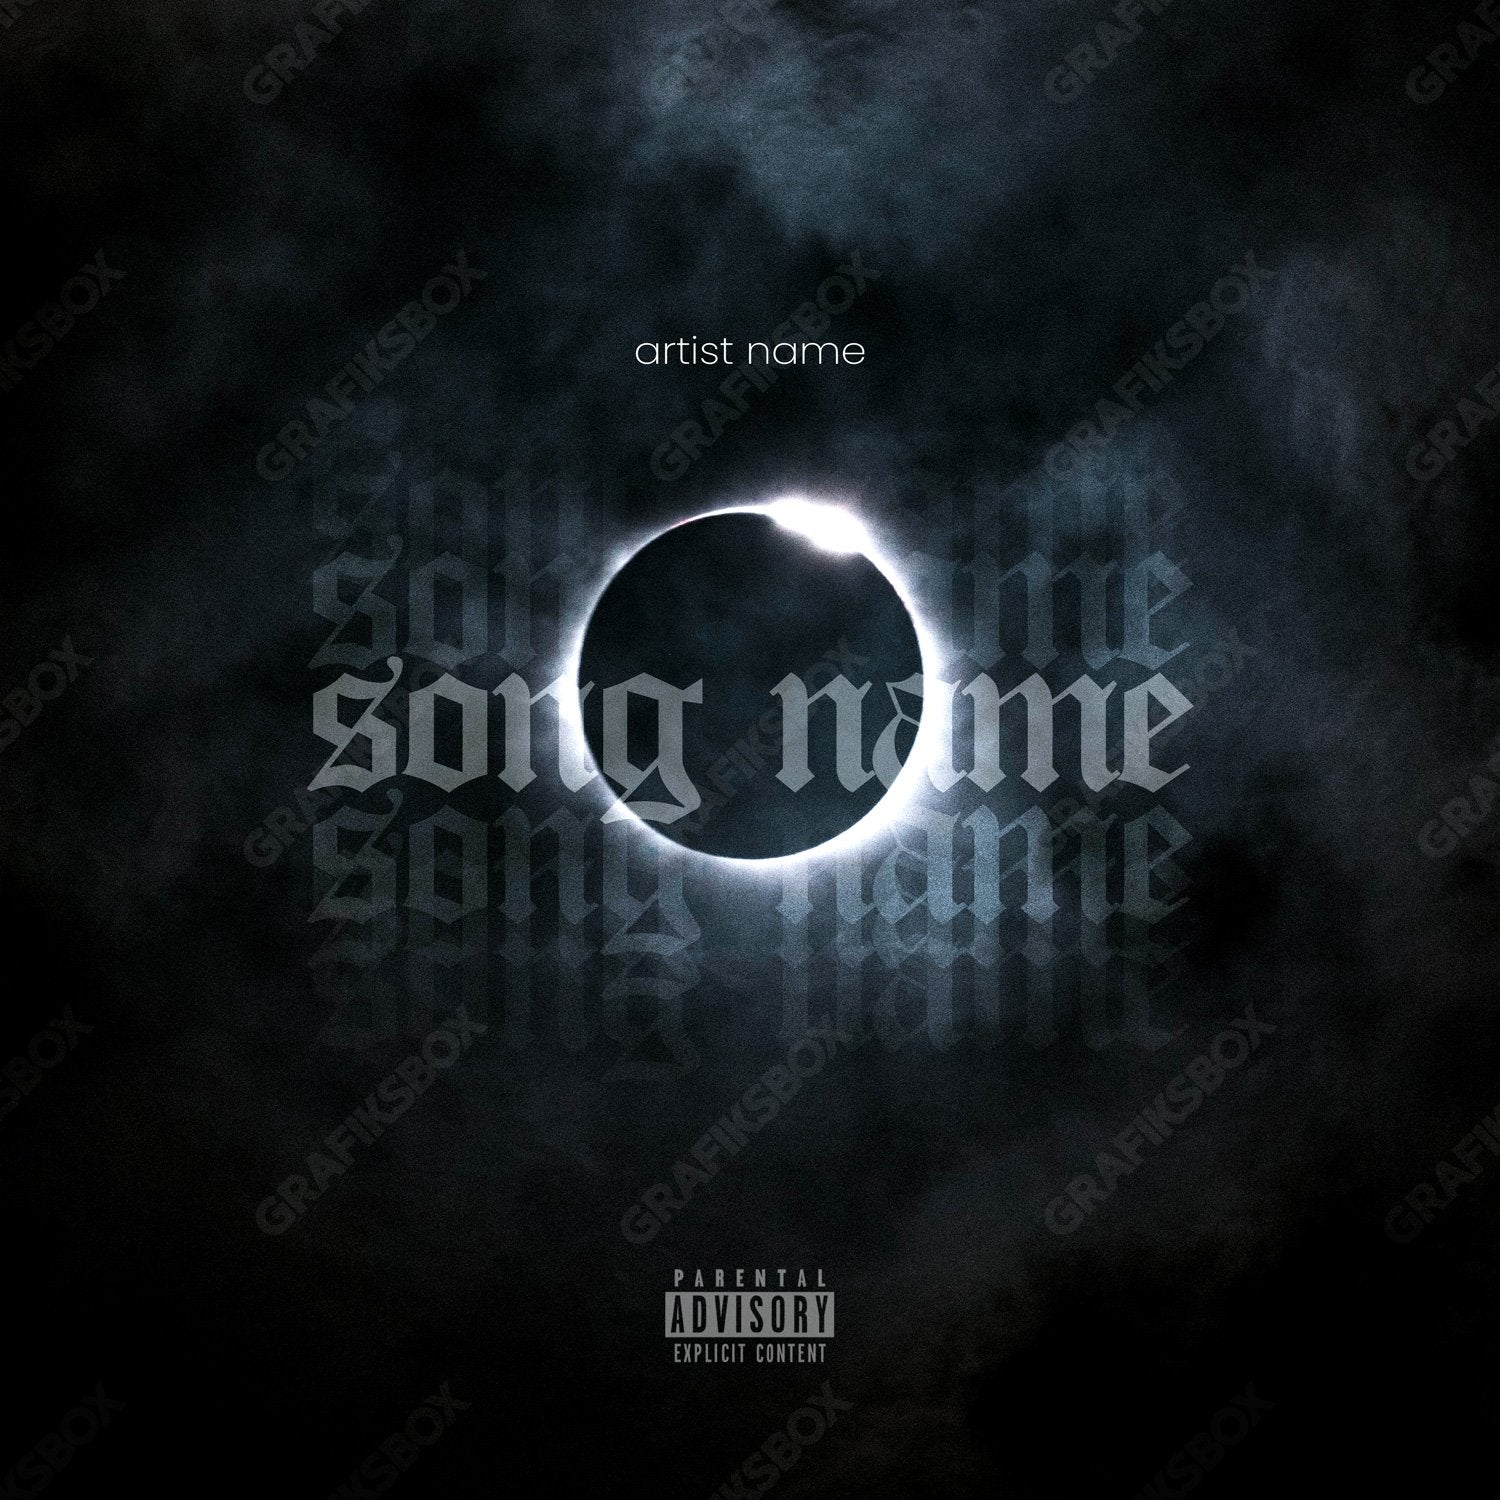 Eclipse premade cover art